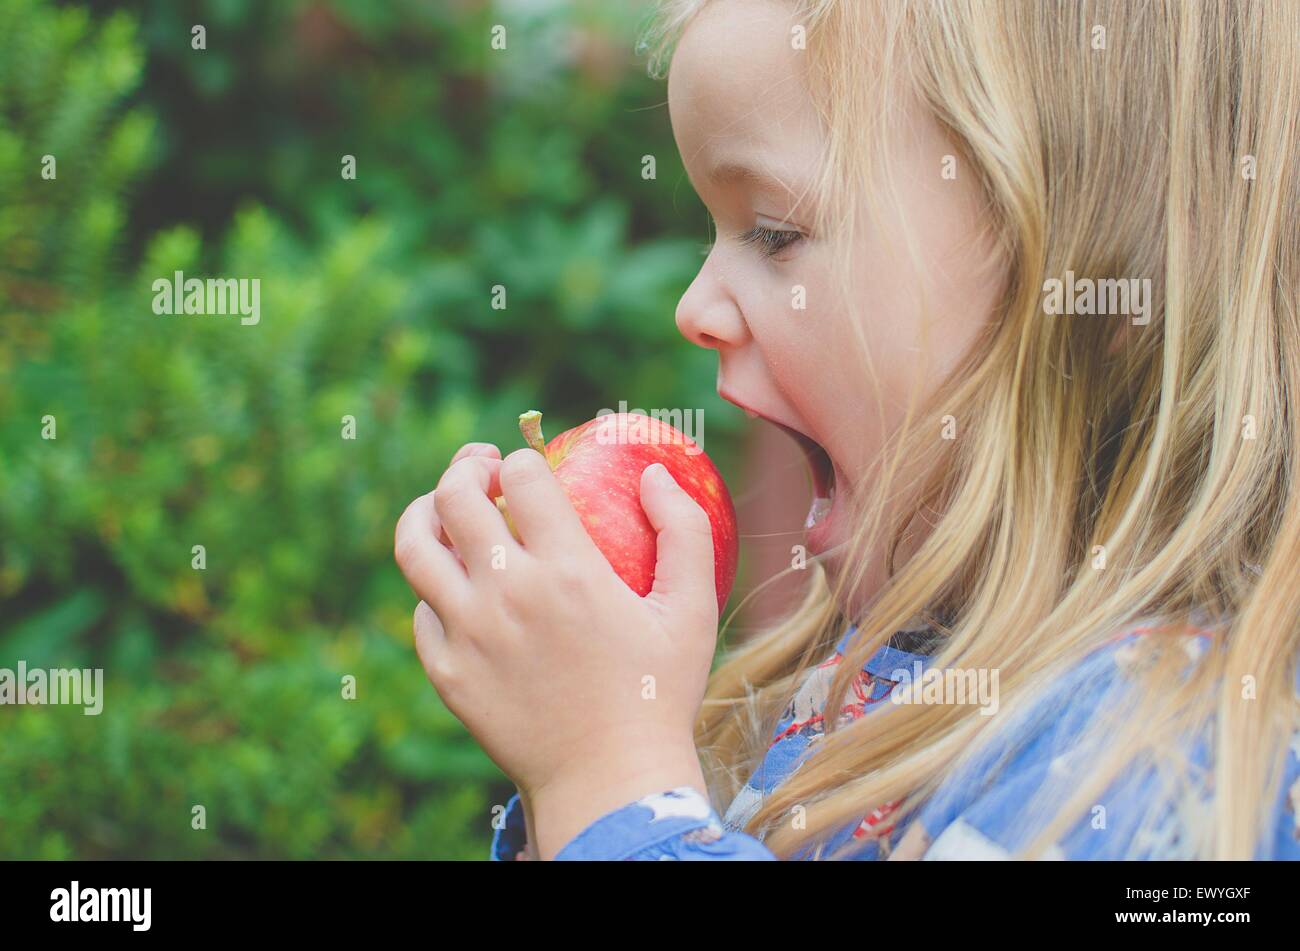 Vue latérale d'une fille sur le point de prendre une bouchée d'une pomme Banque D'Images